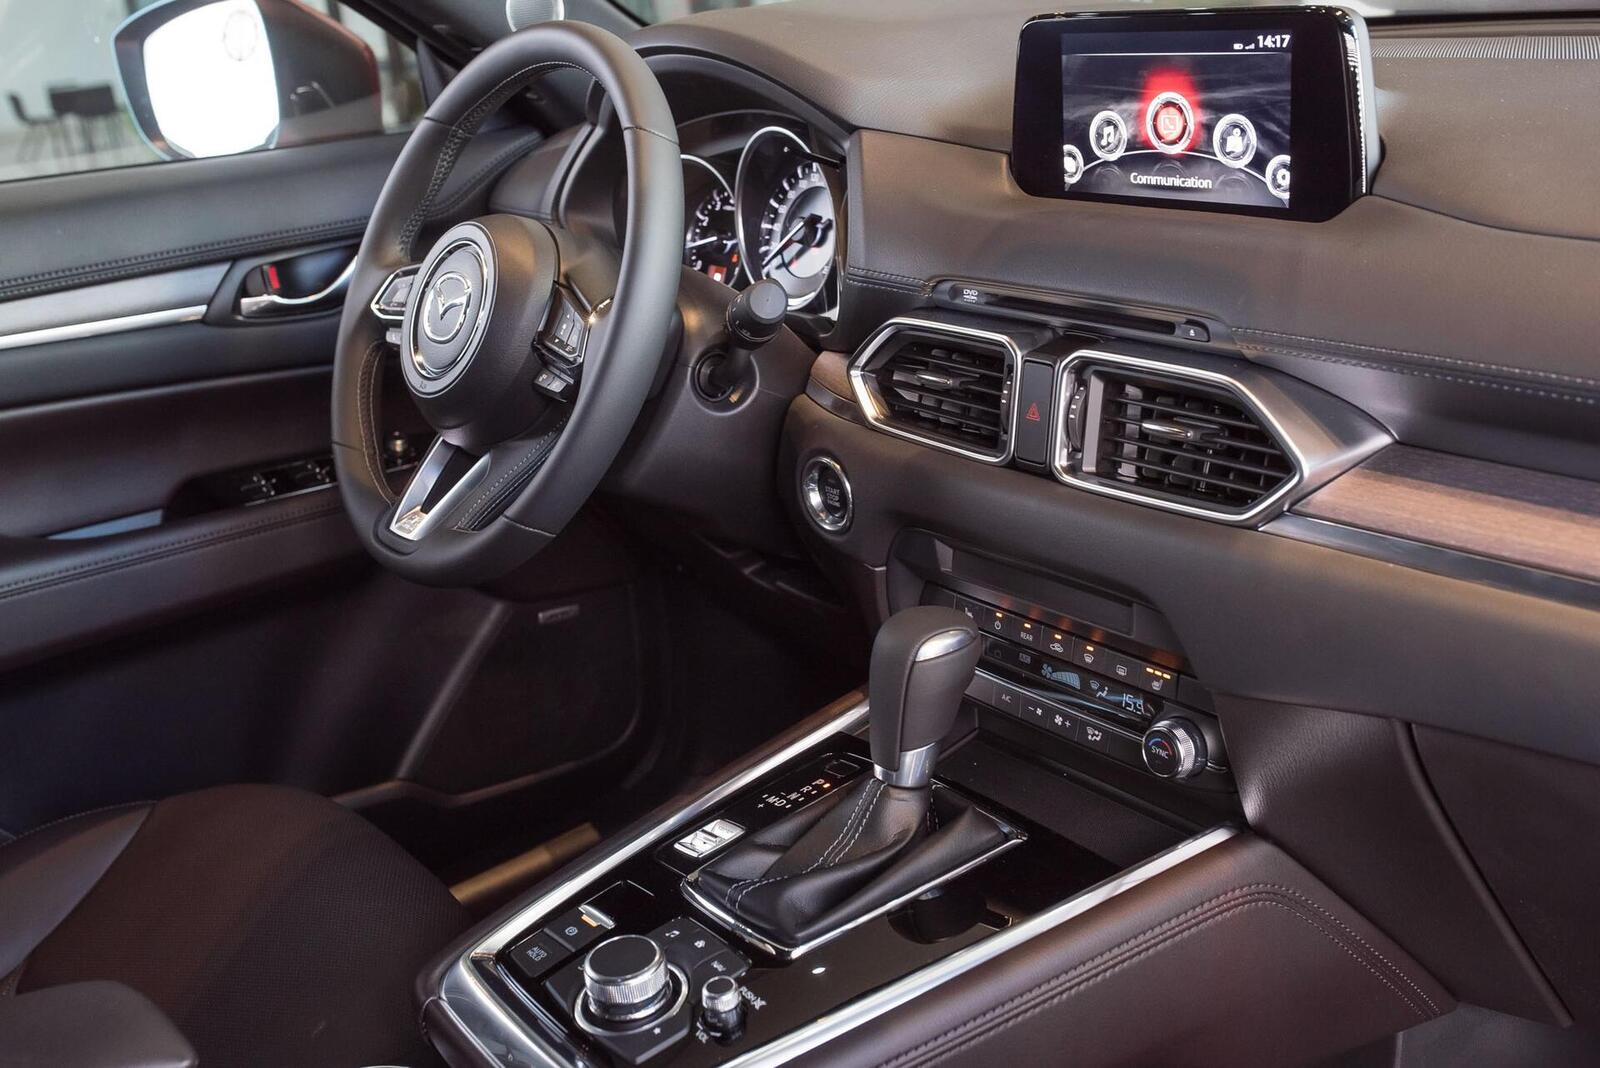 So sánh trang bị tiện nghi và an toàn của các phiên bản Mazda CX-8 - Hình 7